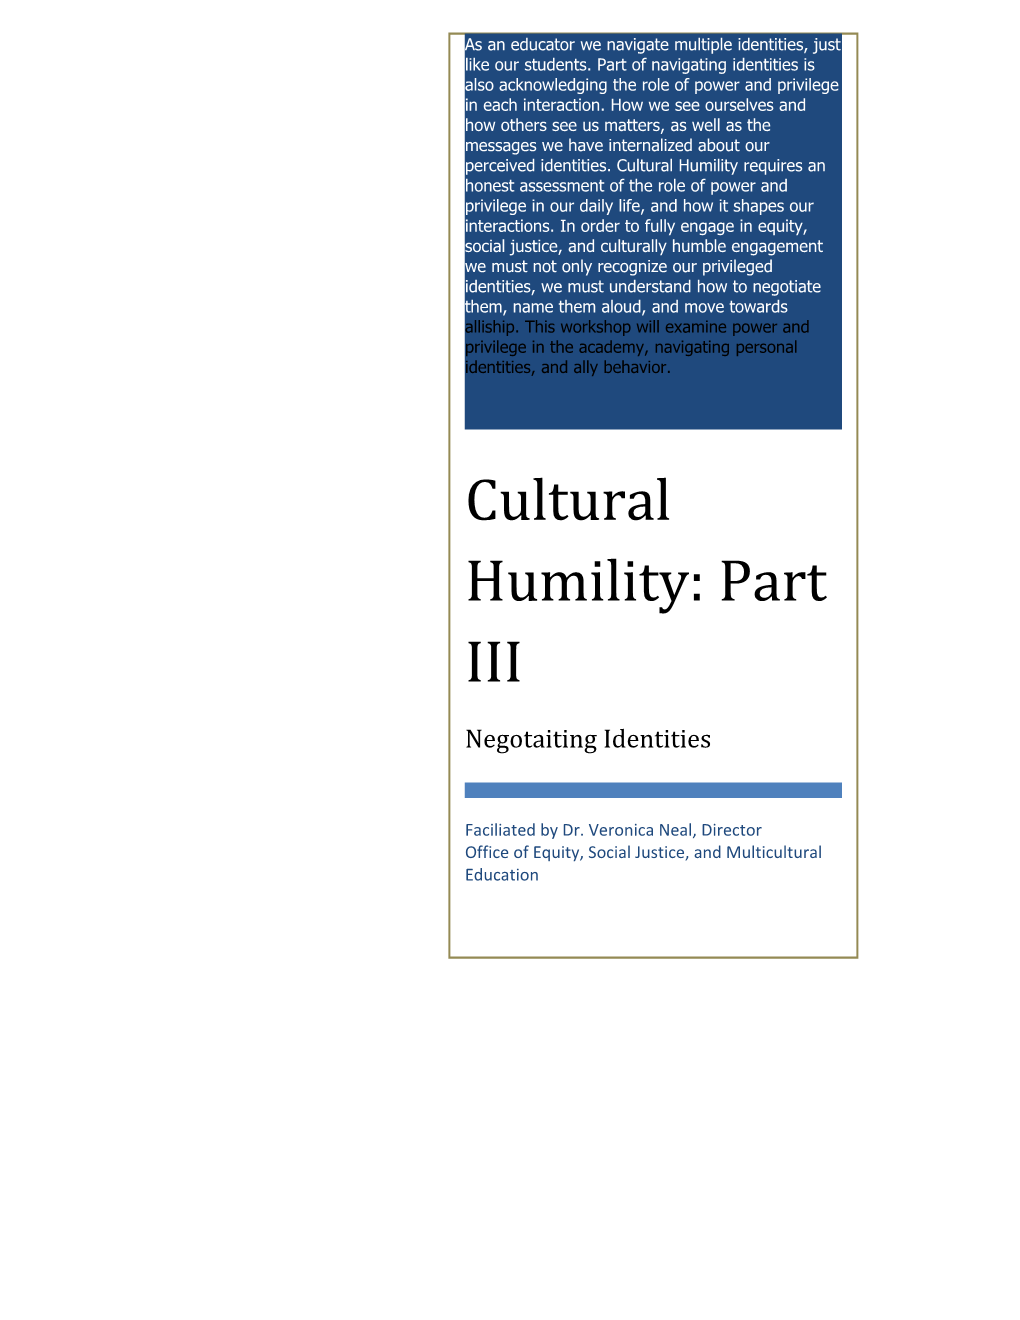 Cultural Humility: Part II